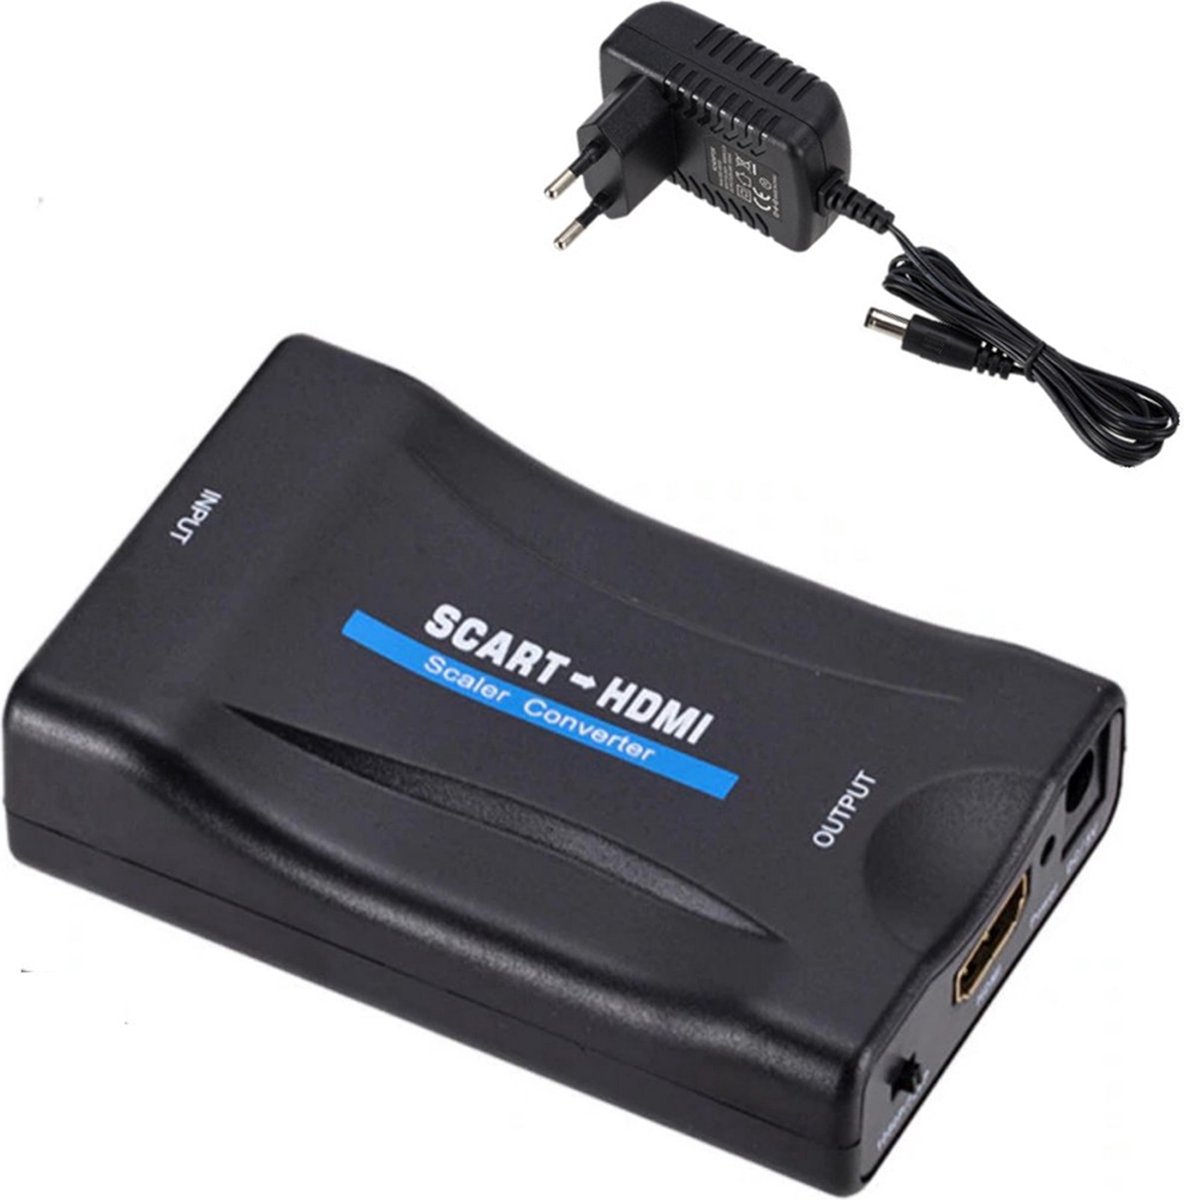 Video converter - Scart naar HDMI - Converter met kabel - Adapter - Omvormer - Voor televisie - Full HD - 720P / 1080 P - zwart